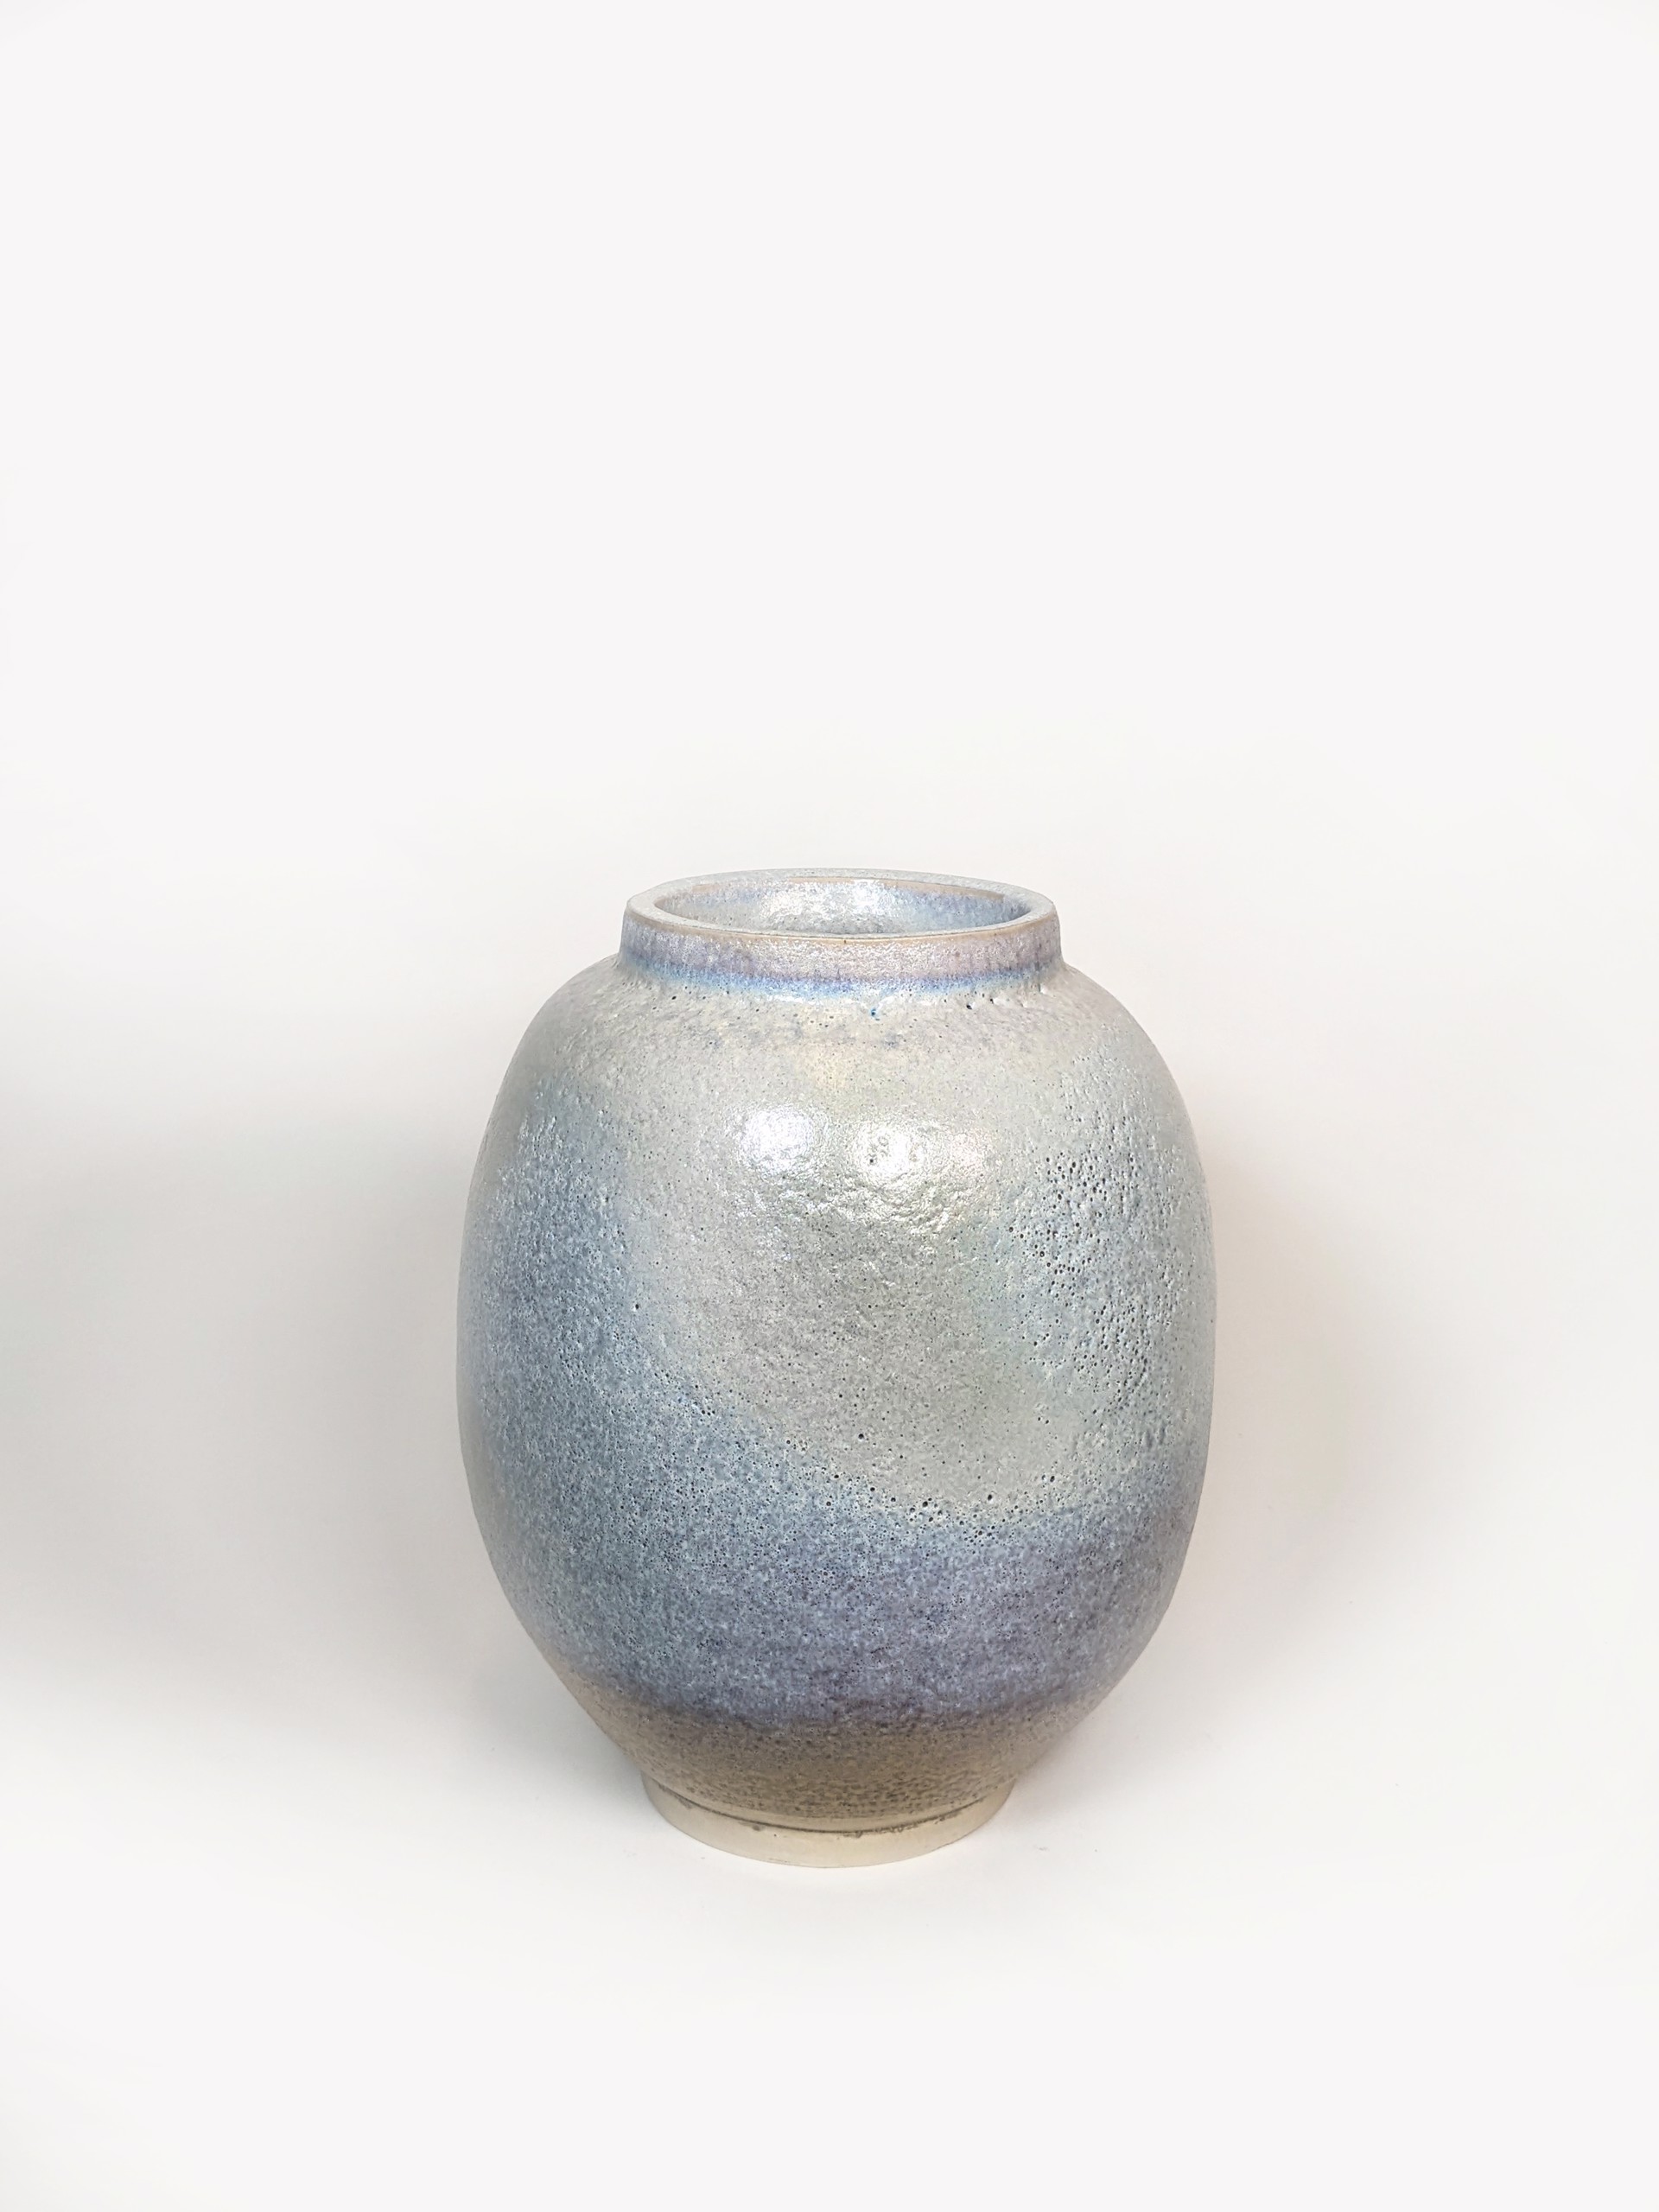 Moon Jar III by Jo-Anne Wu